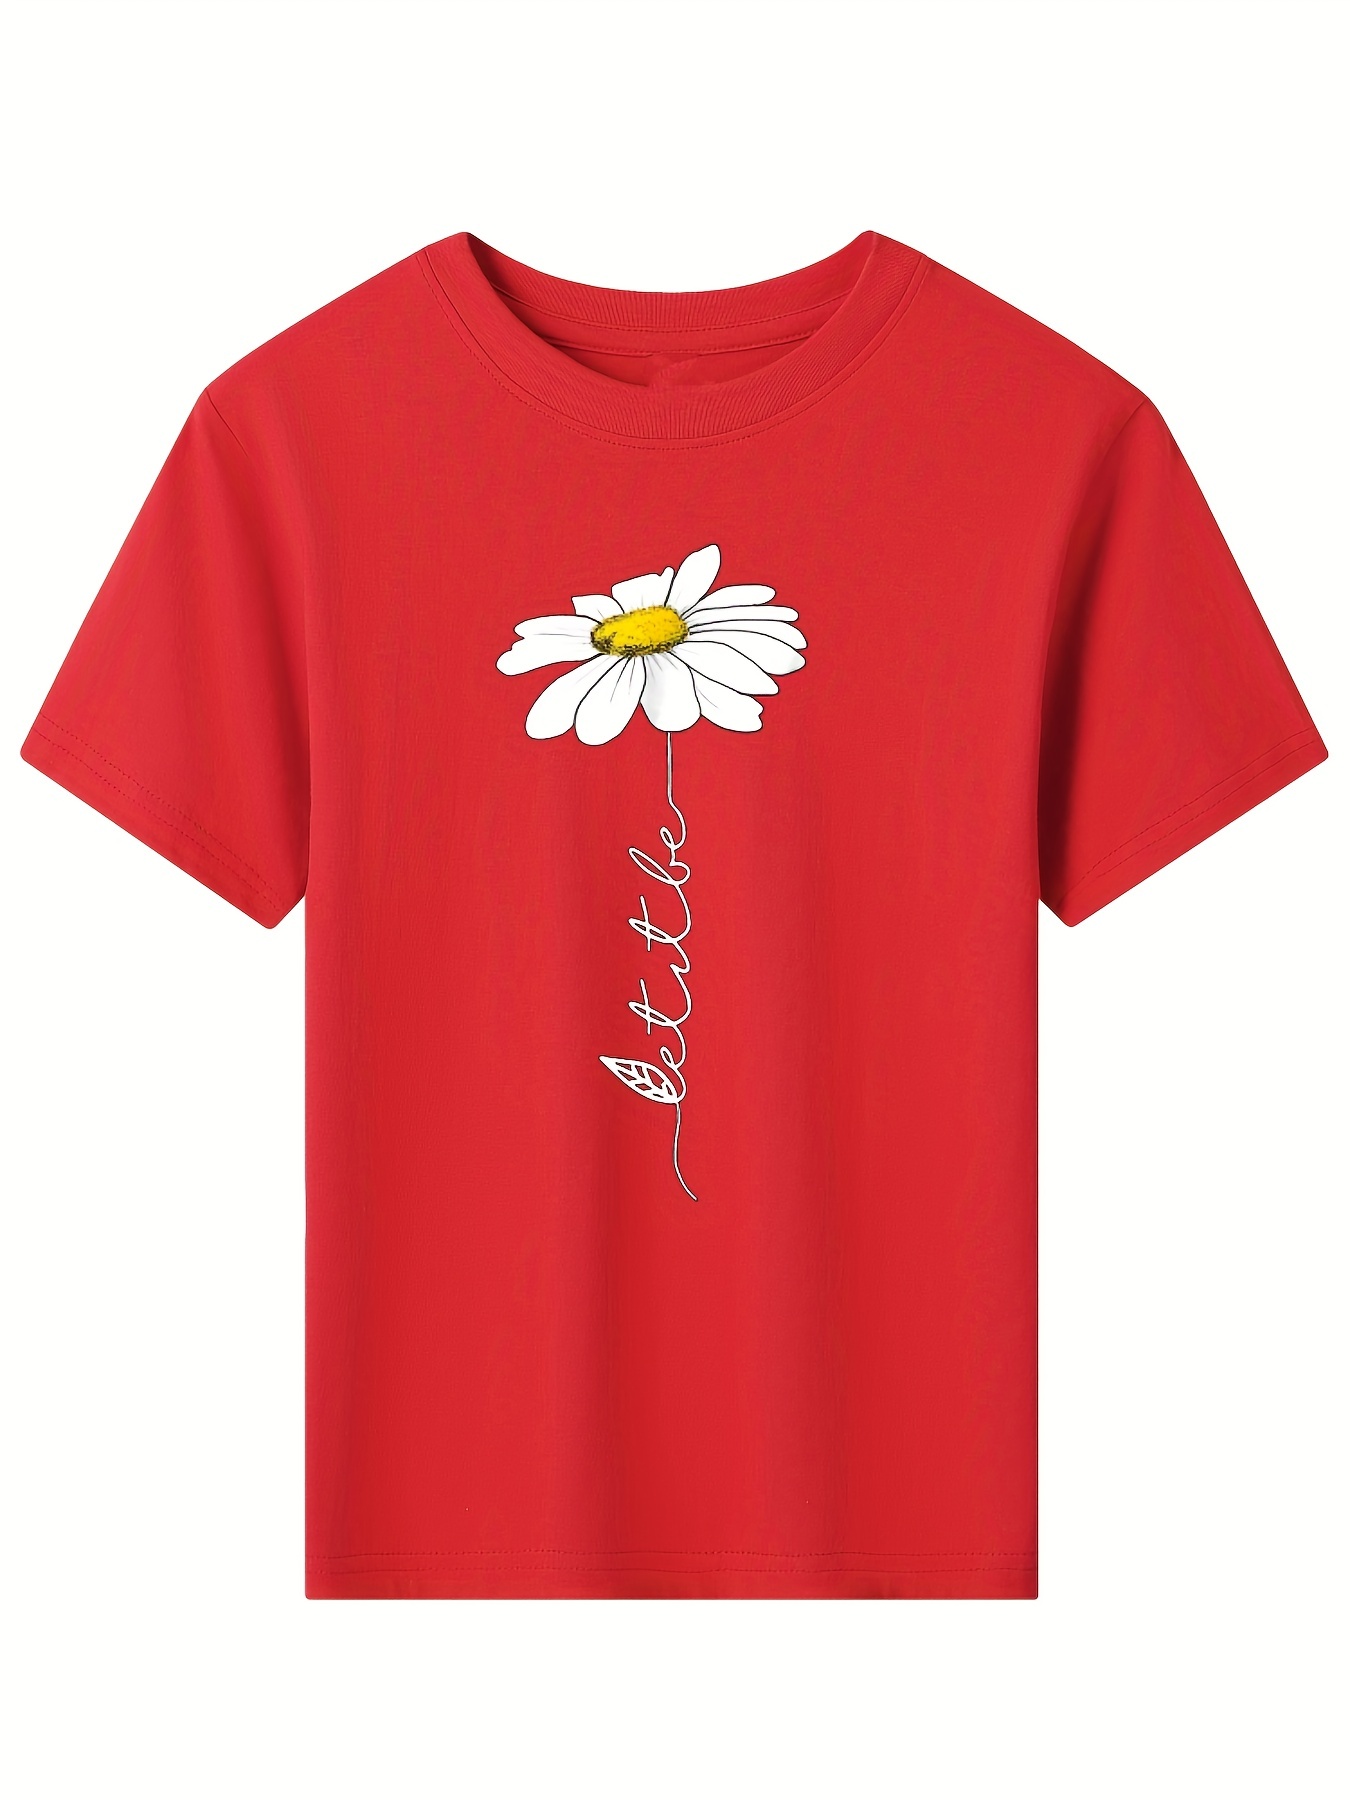 Las mejores ofertas en Niñas Amarillo 10-12 tamaño Tops, camisas y camisetas  para Niñas